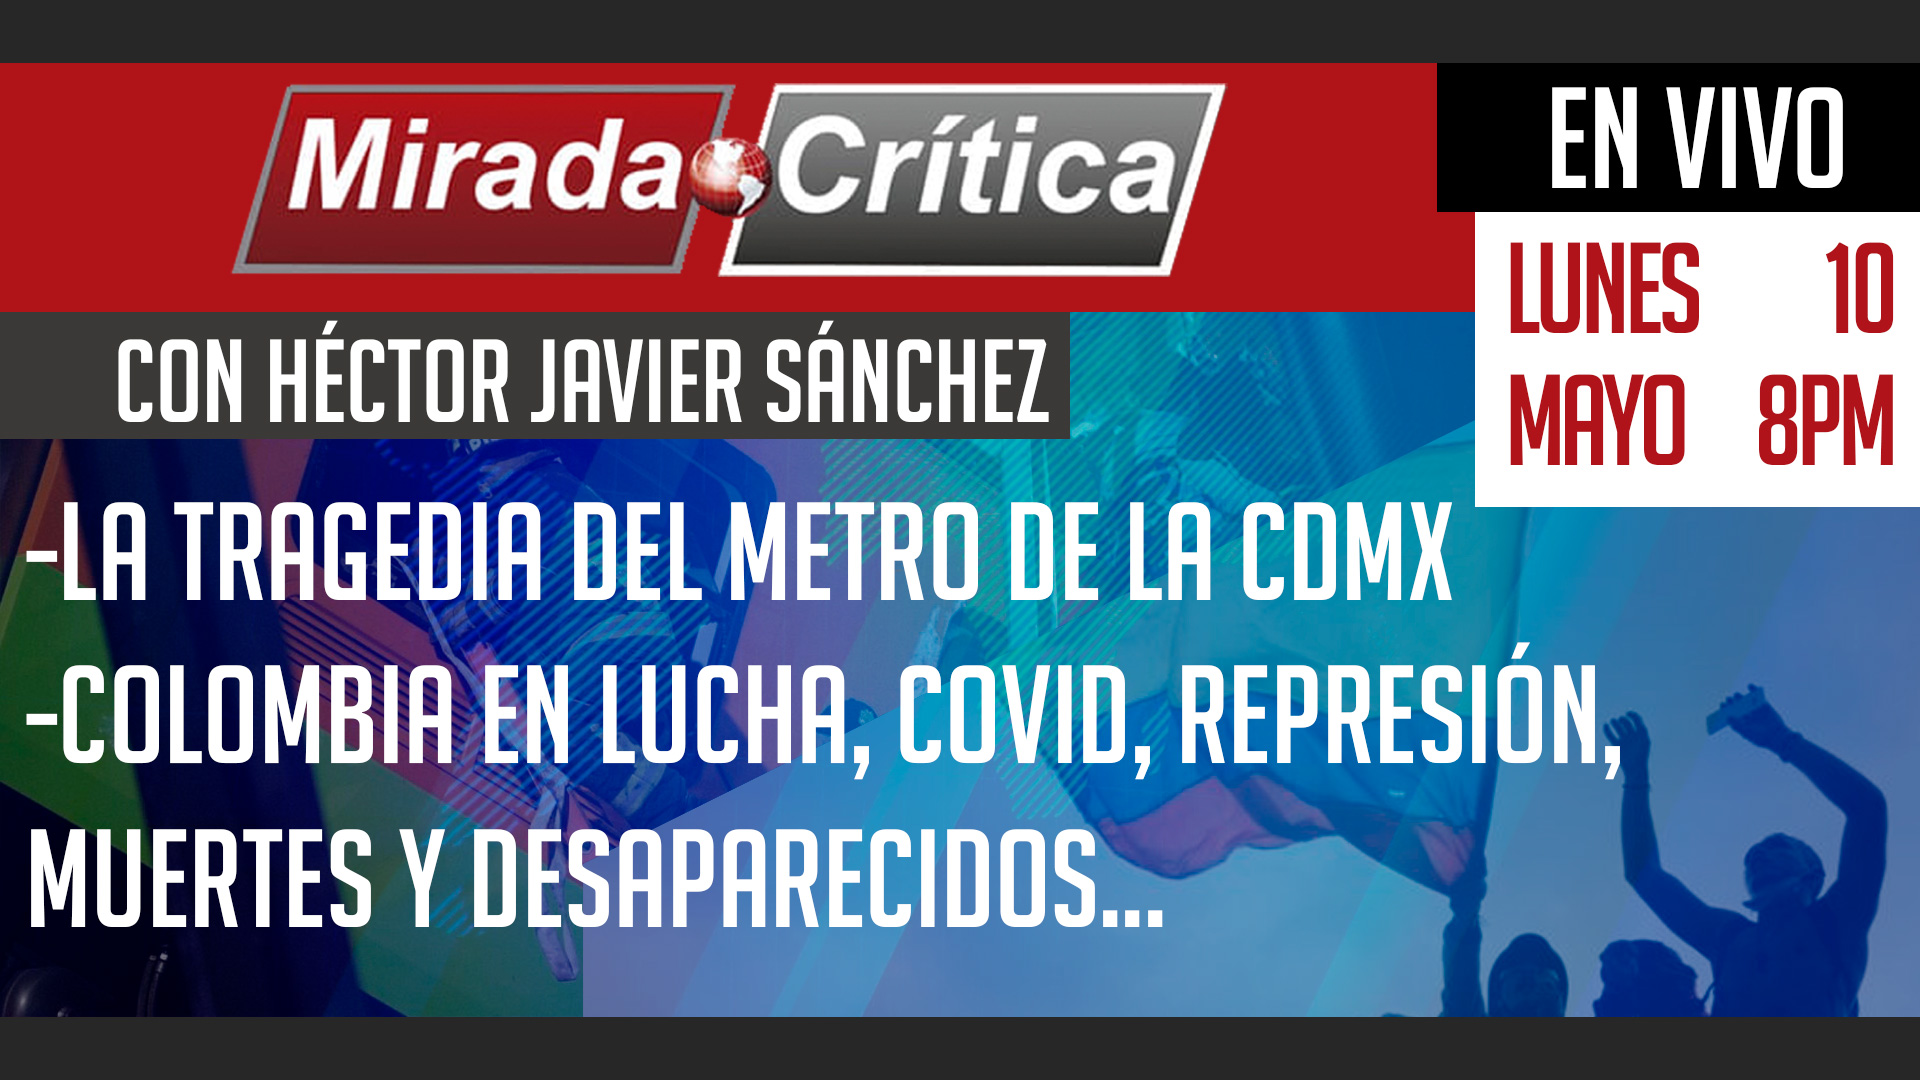 La tragedia del metro de la CDMX / Colombia en lucha - Mirada Crítica